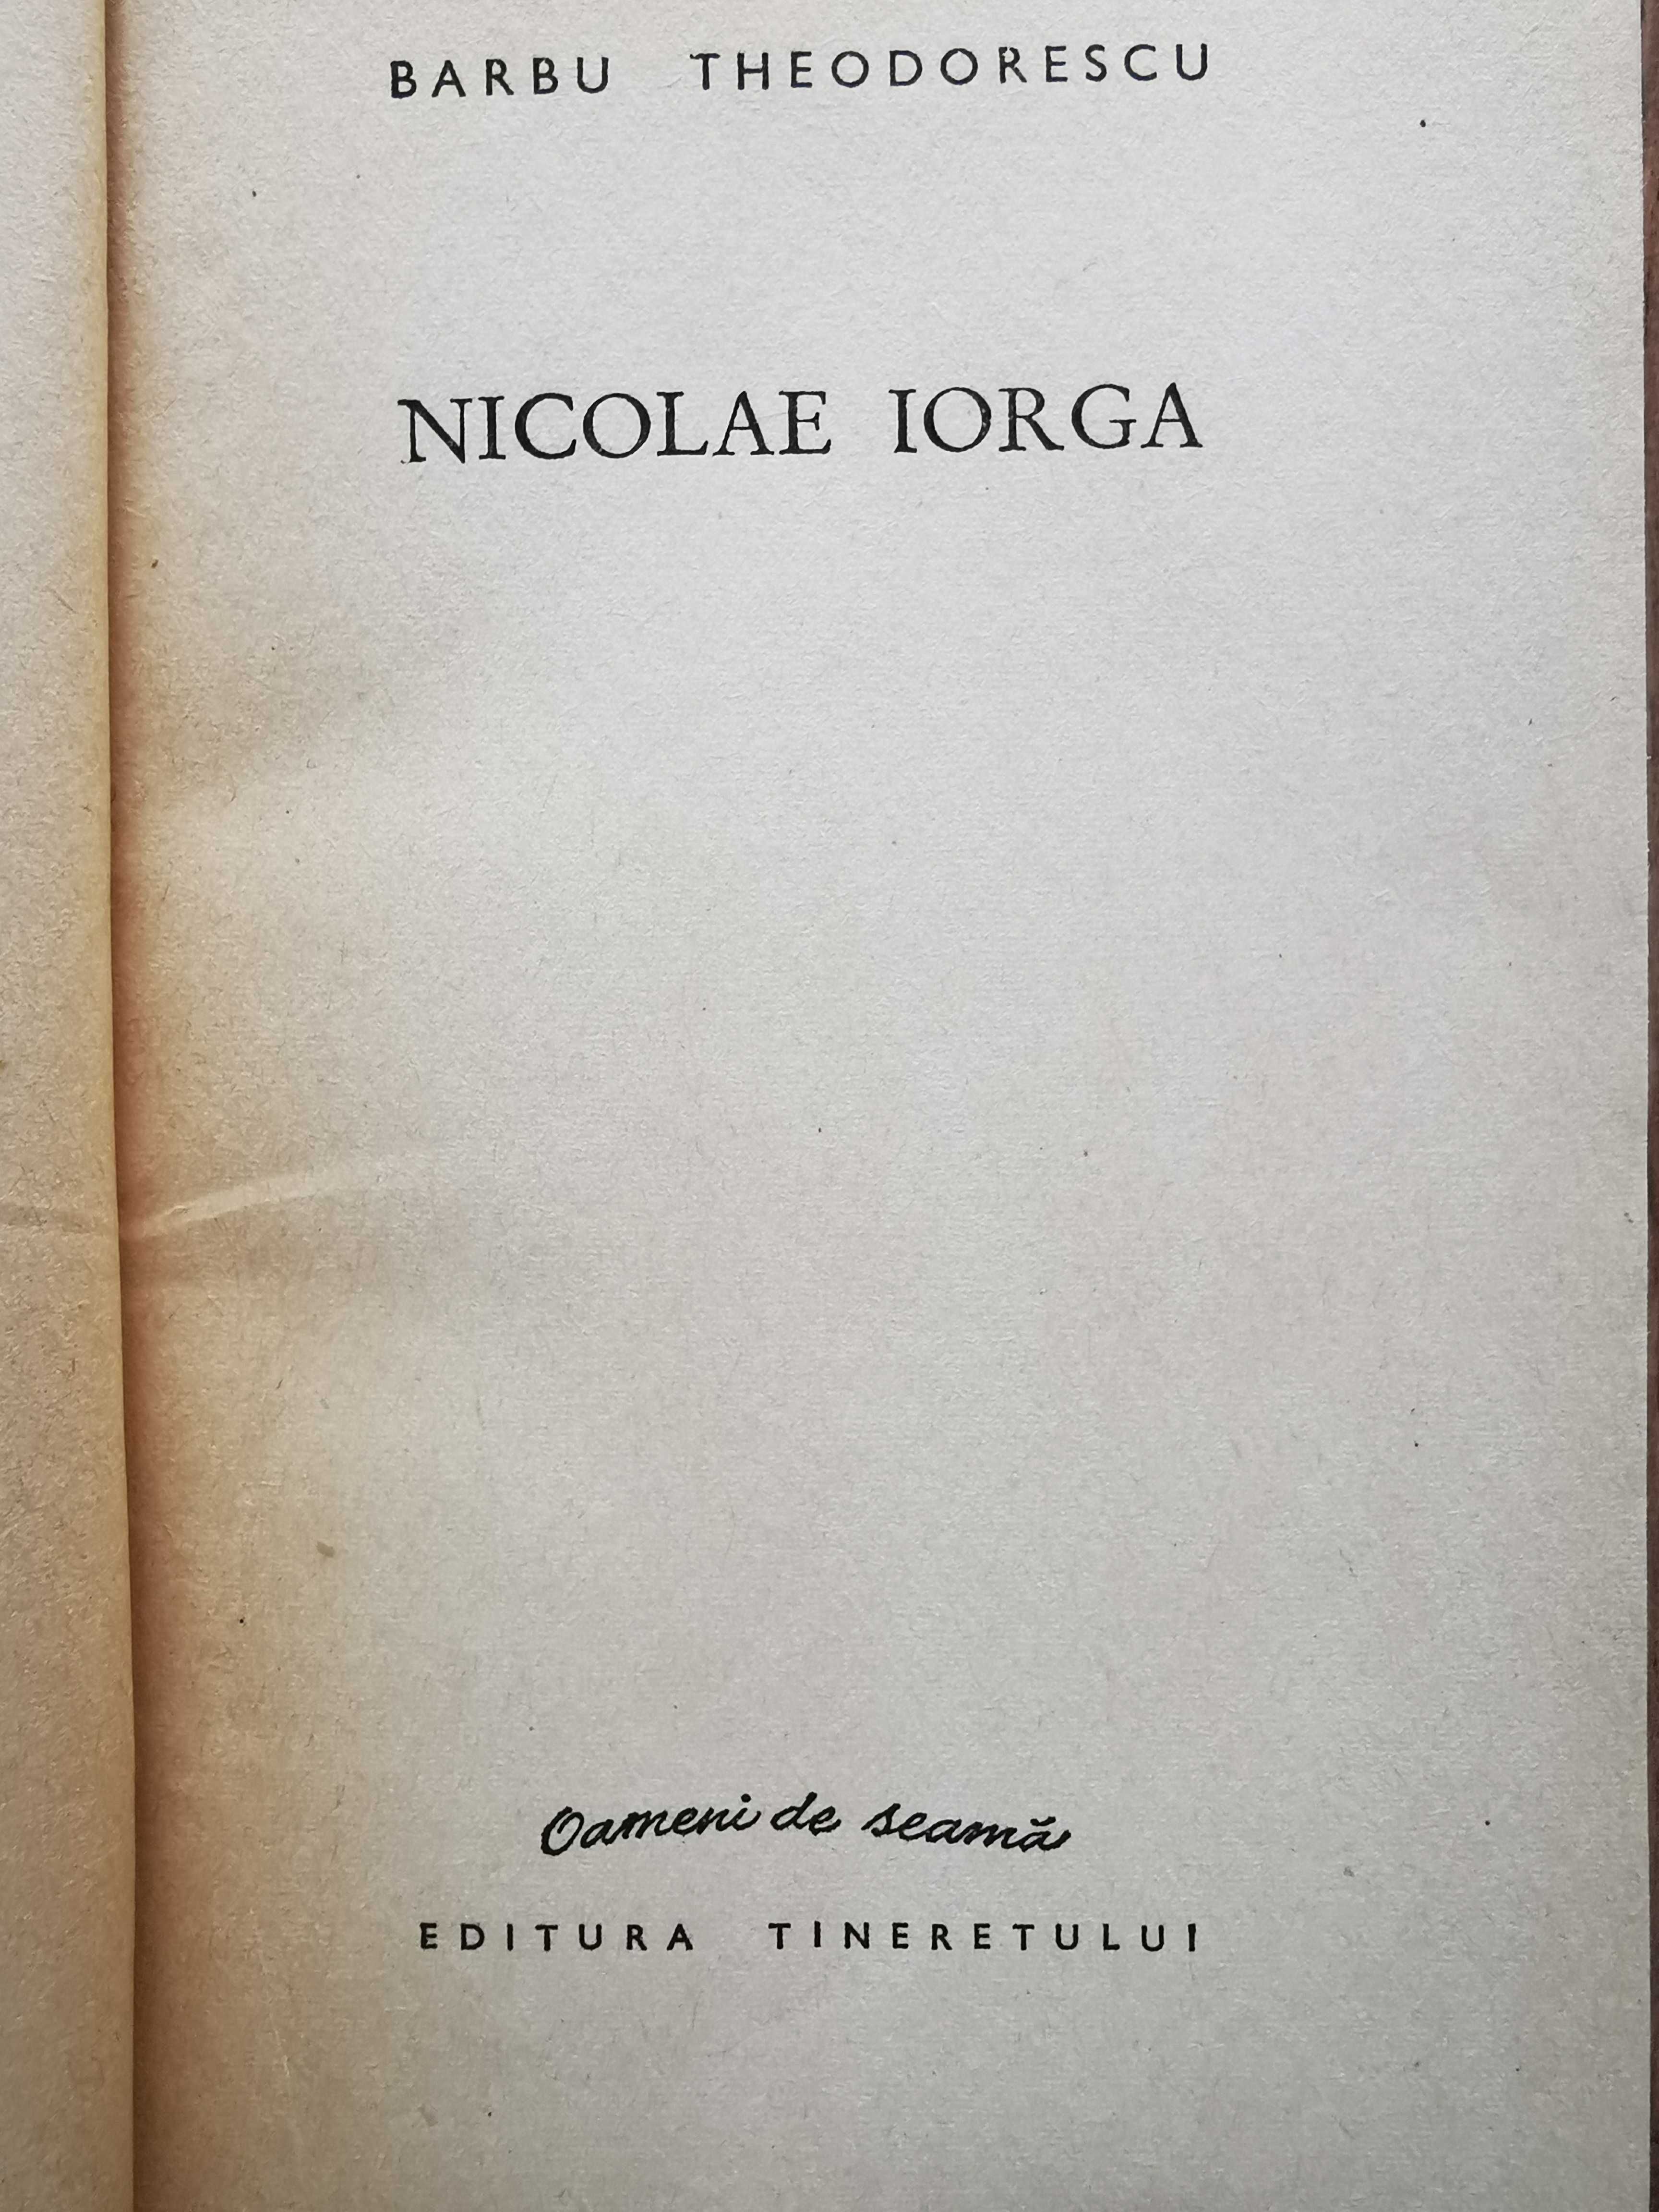 NICOLAE IORGA de Barbu Theodorescu, volum cu ilustratii